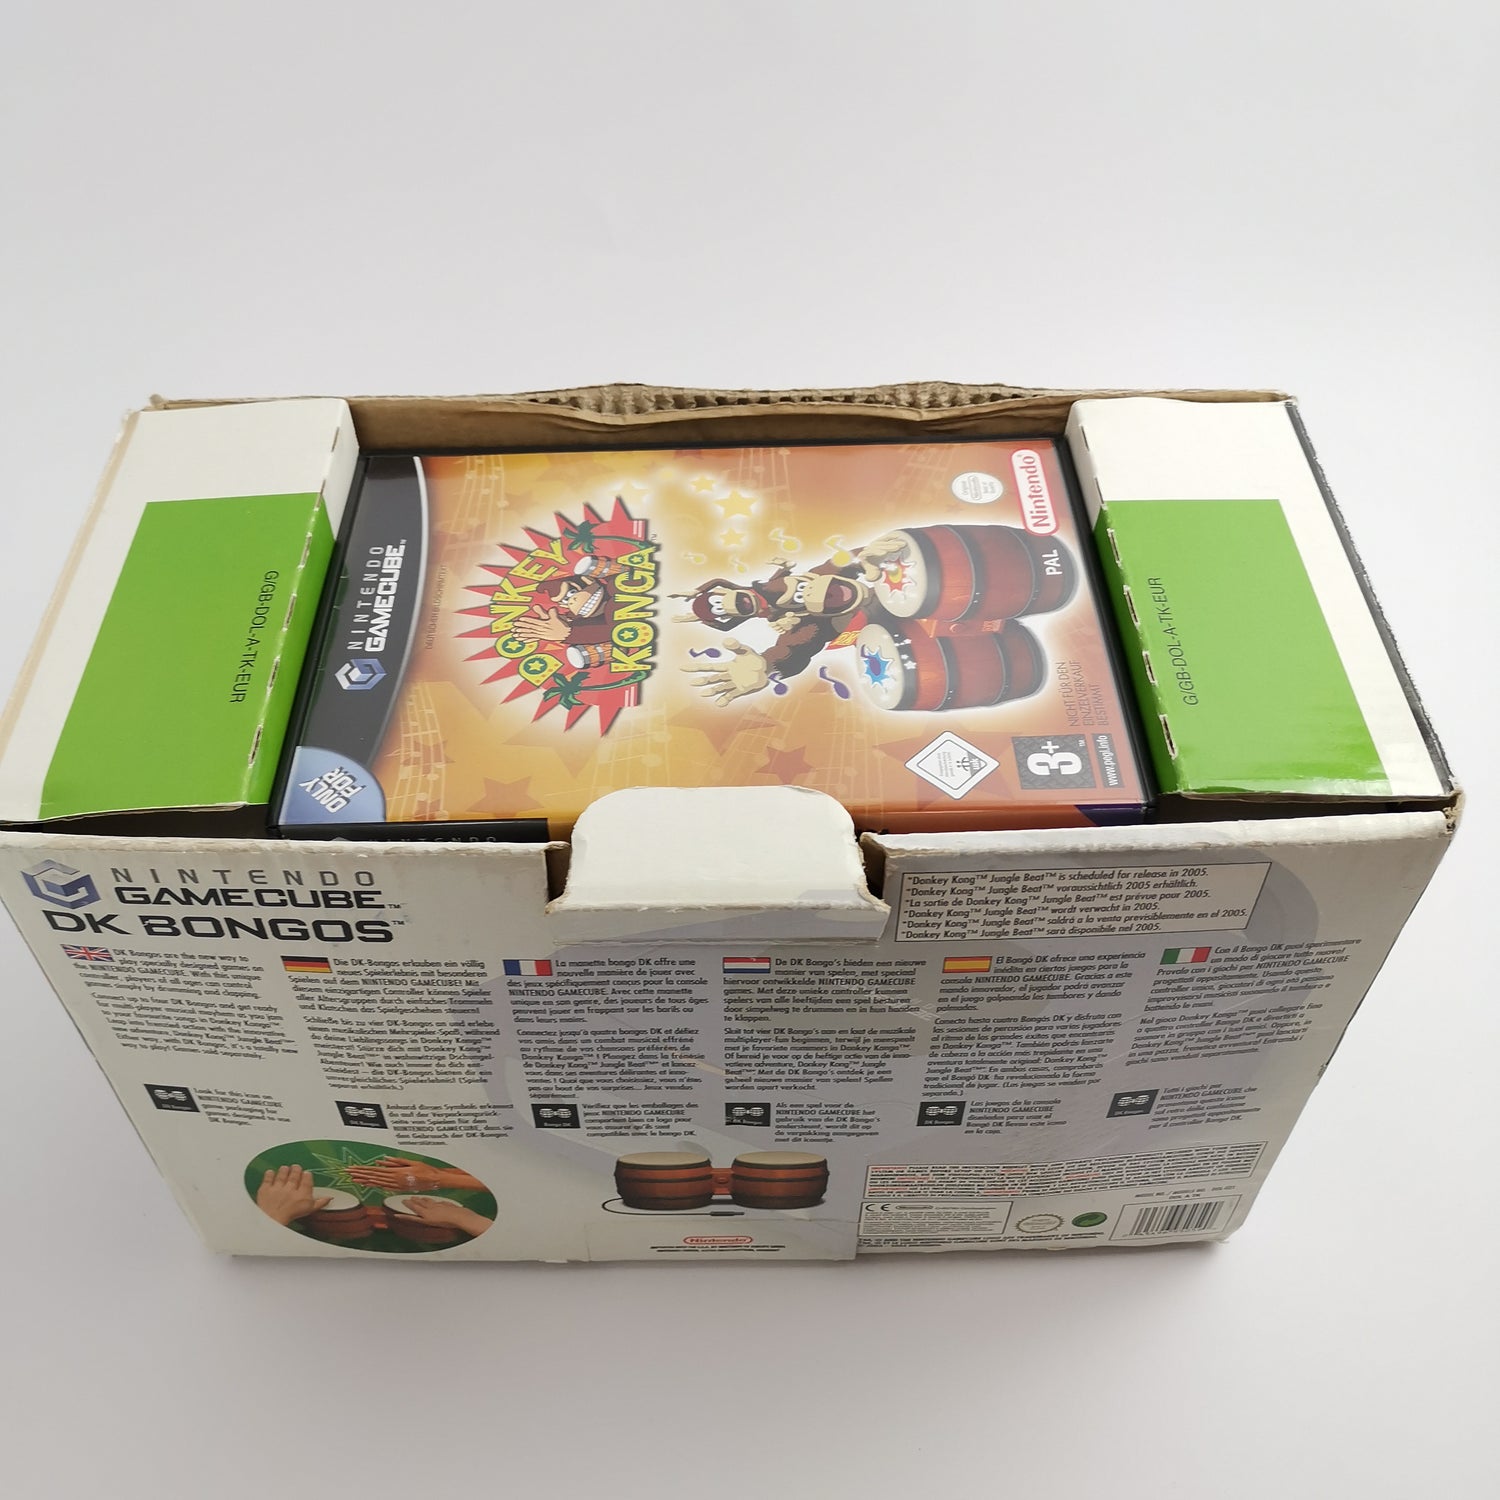 Nintendo Gamecube Game: Donkey Konga + DK Bongos Drums | Game Cube OVP PAL